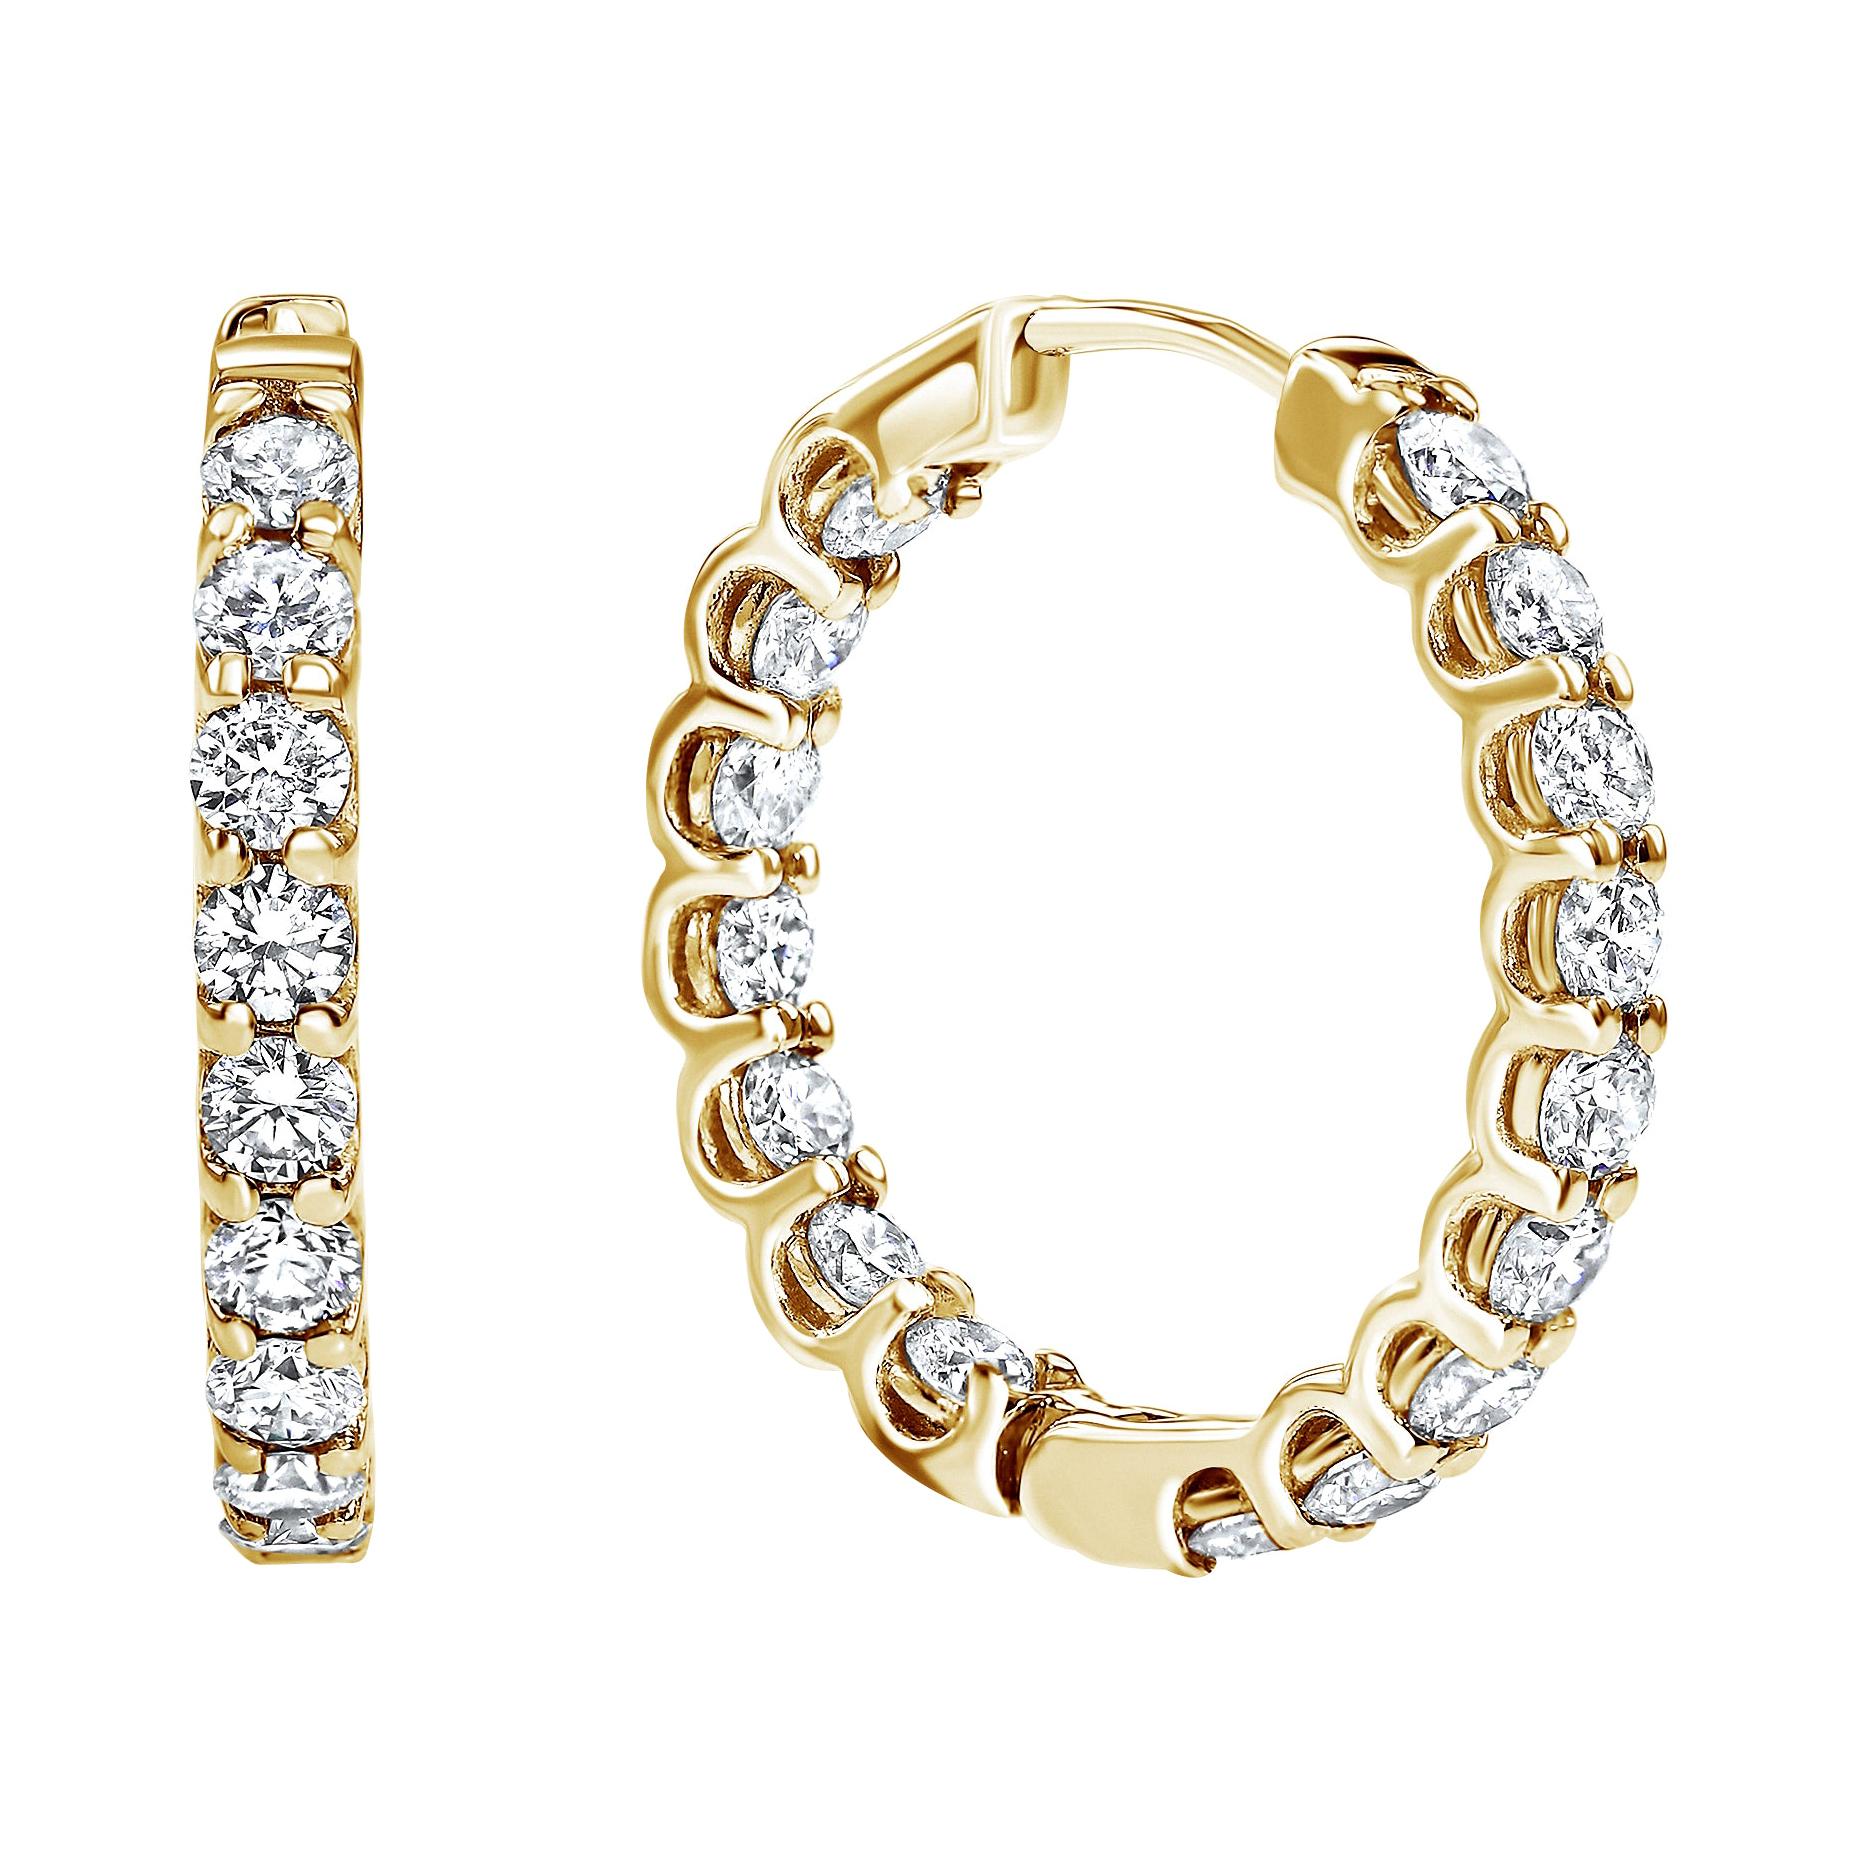 1.22 Carat Diamond Modern Hoop Earrings in 14 Karat Yellow Gold, Shlomit Rogel